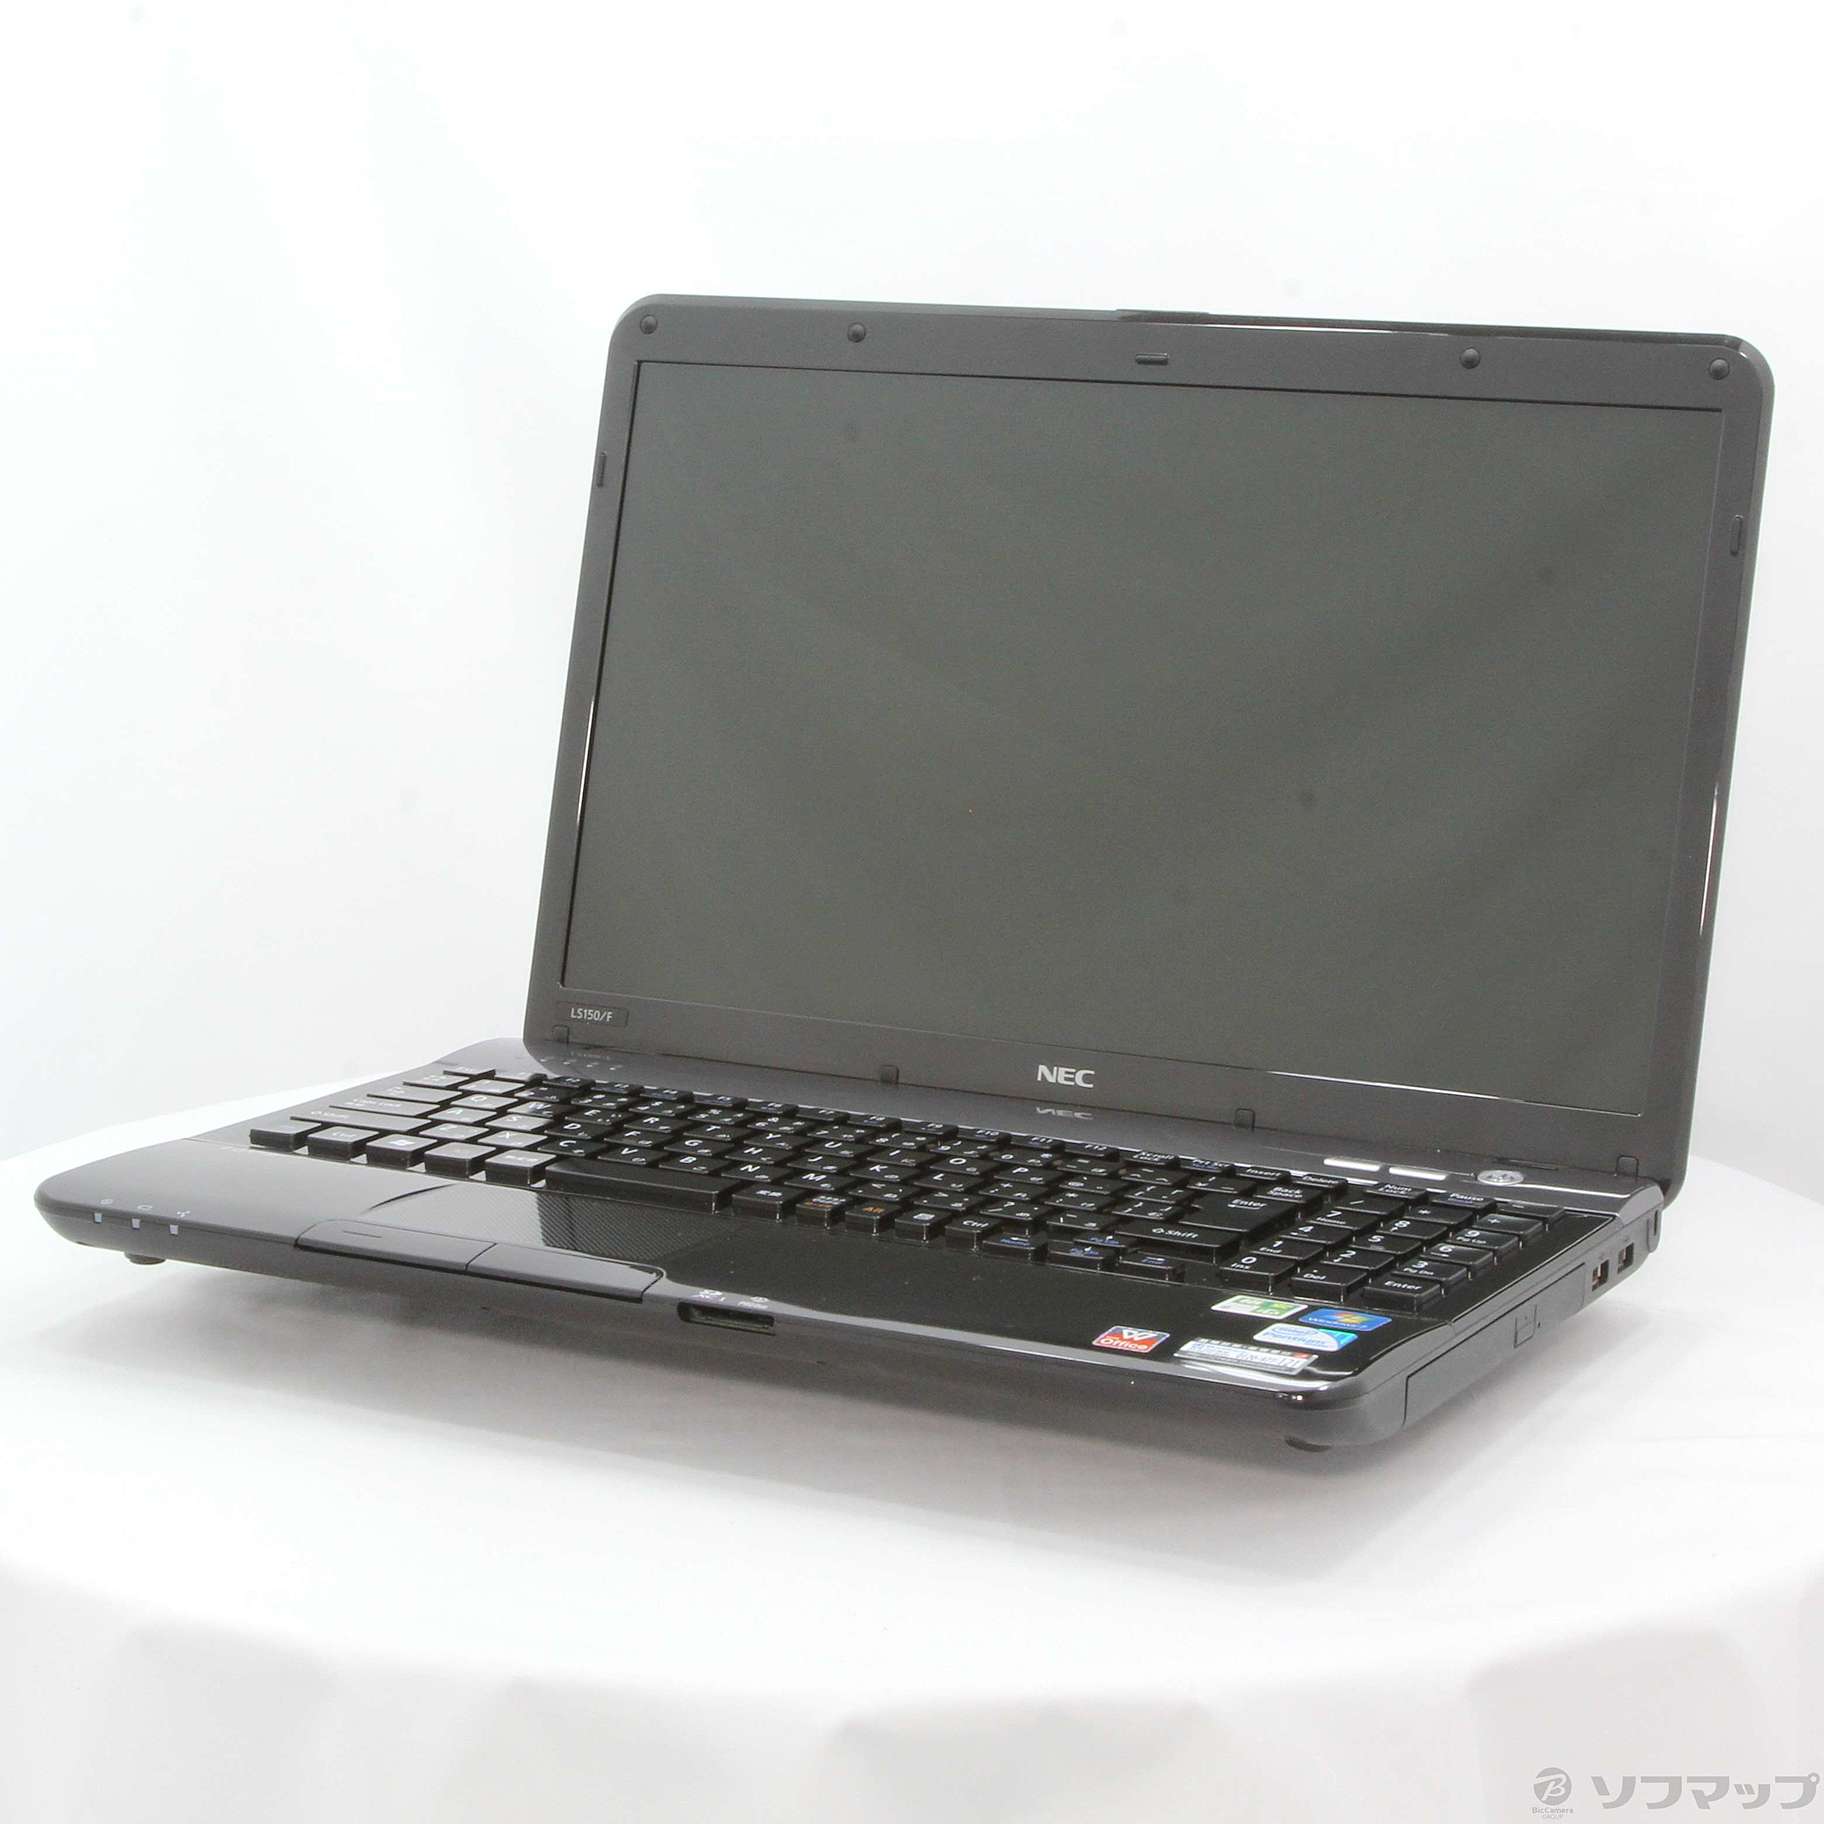 中古 格安安心パソコン Lavie S Ls150 Fs6b Pc Ls150fs6b スターリーブラック リコレ ソフマップの中古通販サイト